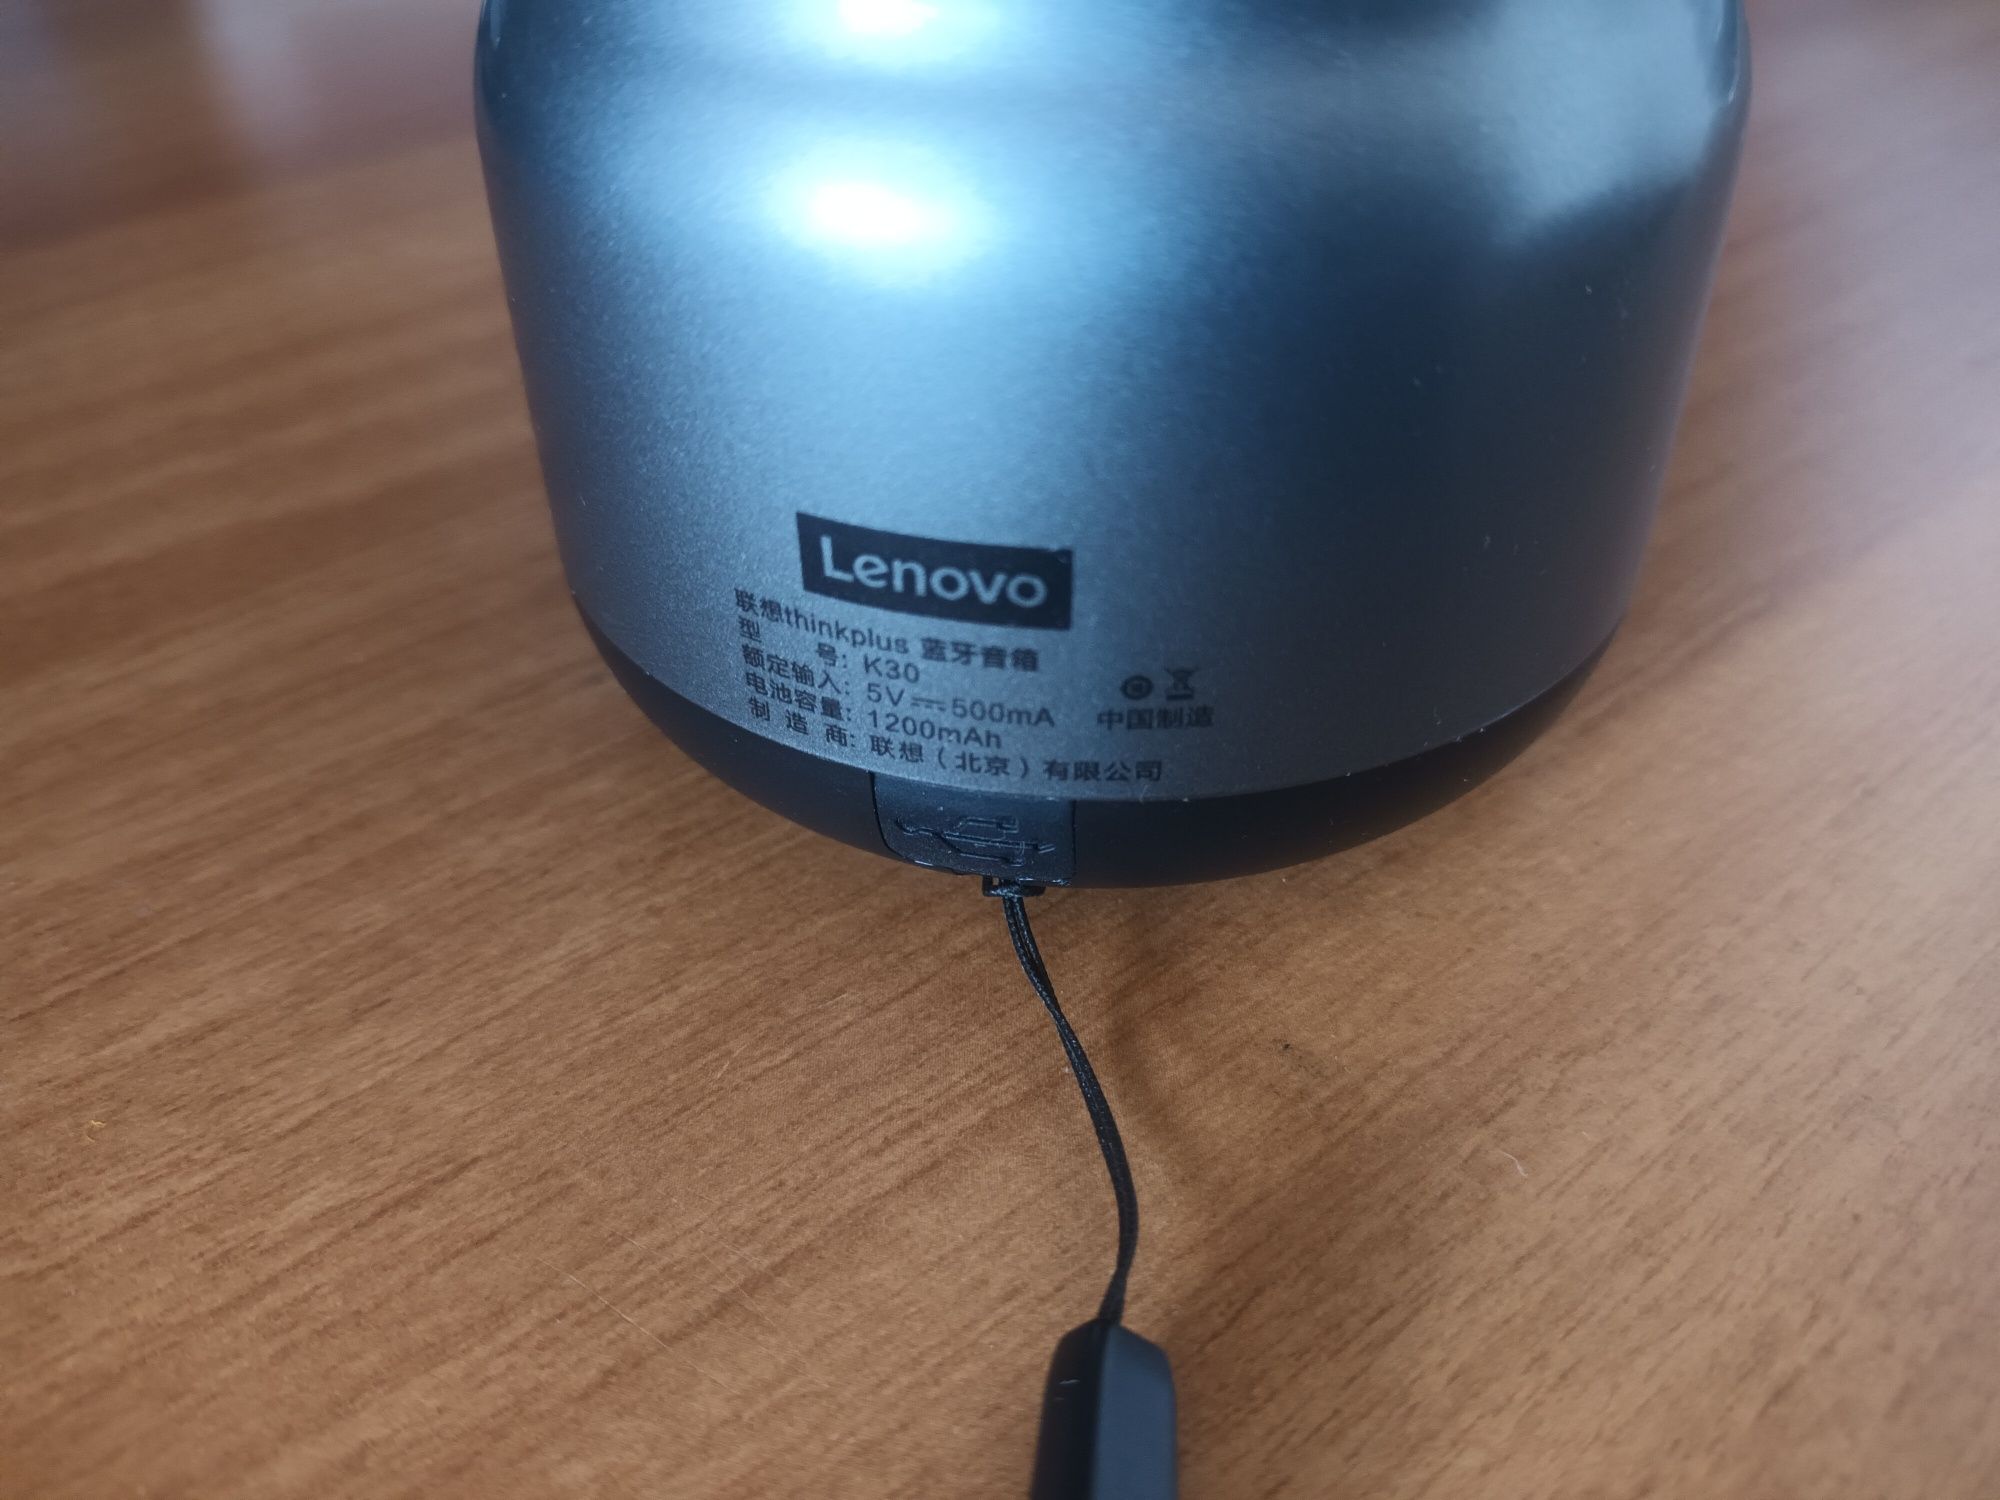 Boxa Bluetooth Lenovo thinkplus K30